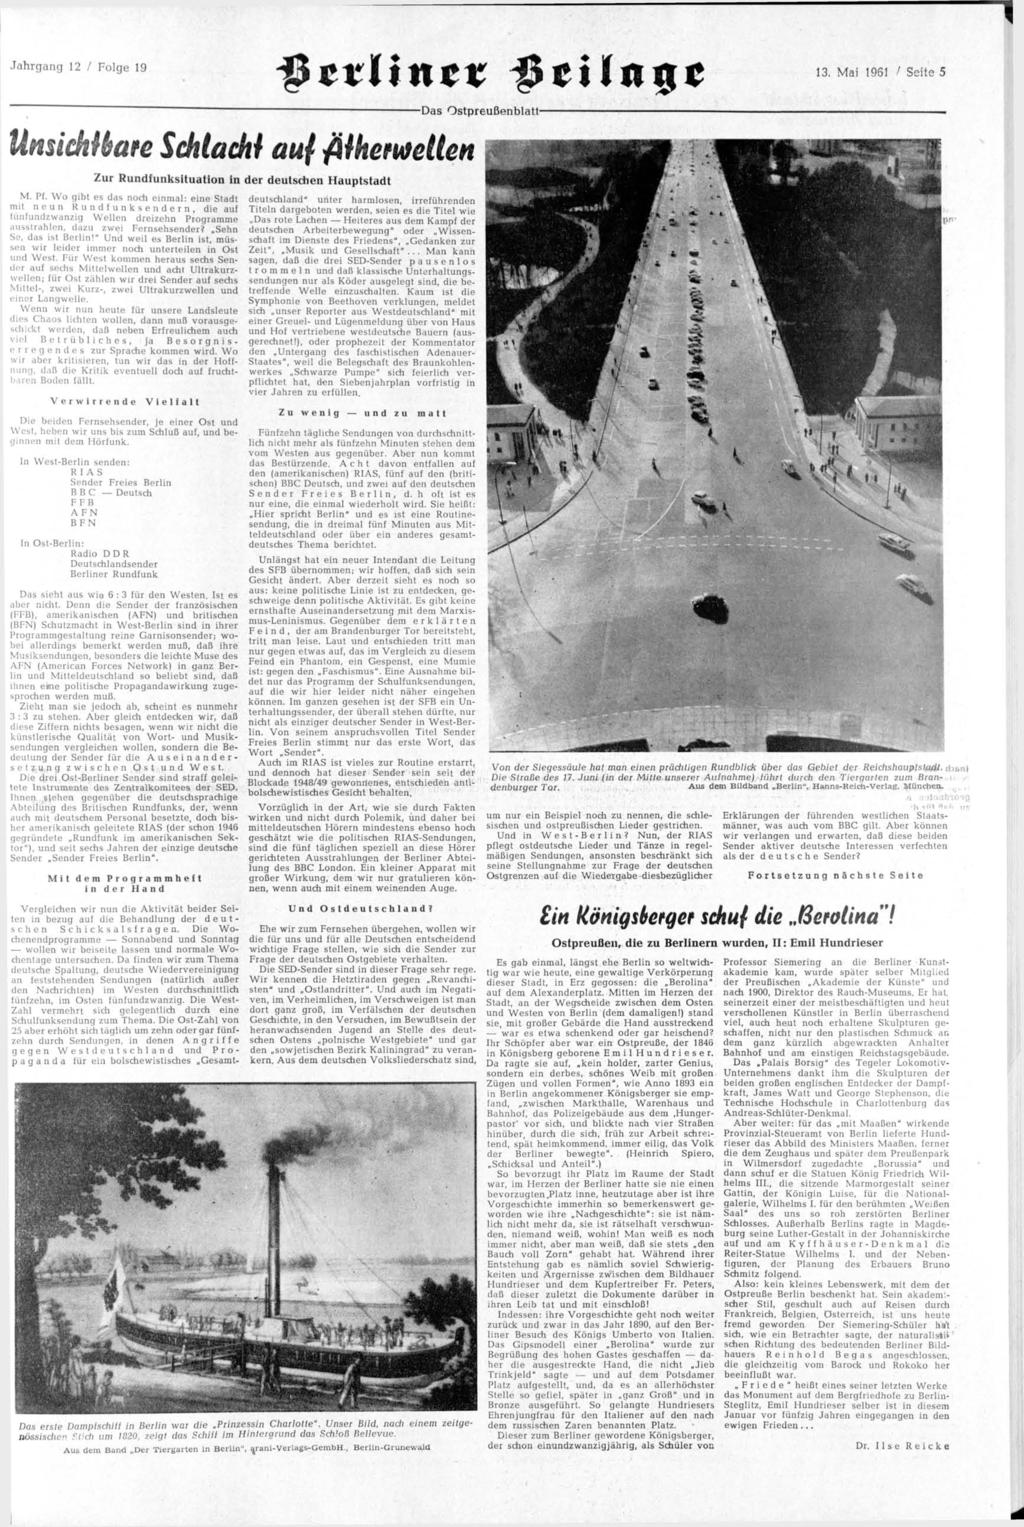 Jahrgang 12 / Folge 19 13. Mai 1961 / Seite 5 Das Ostpreußenblatt- Unsichtbare Schlacht auf filhemelten Zur Rundfunksituation in der deutschen Hauptstadt M. Pf.